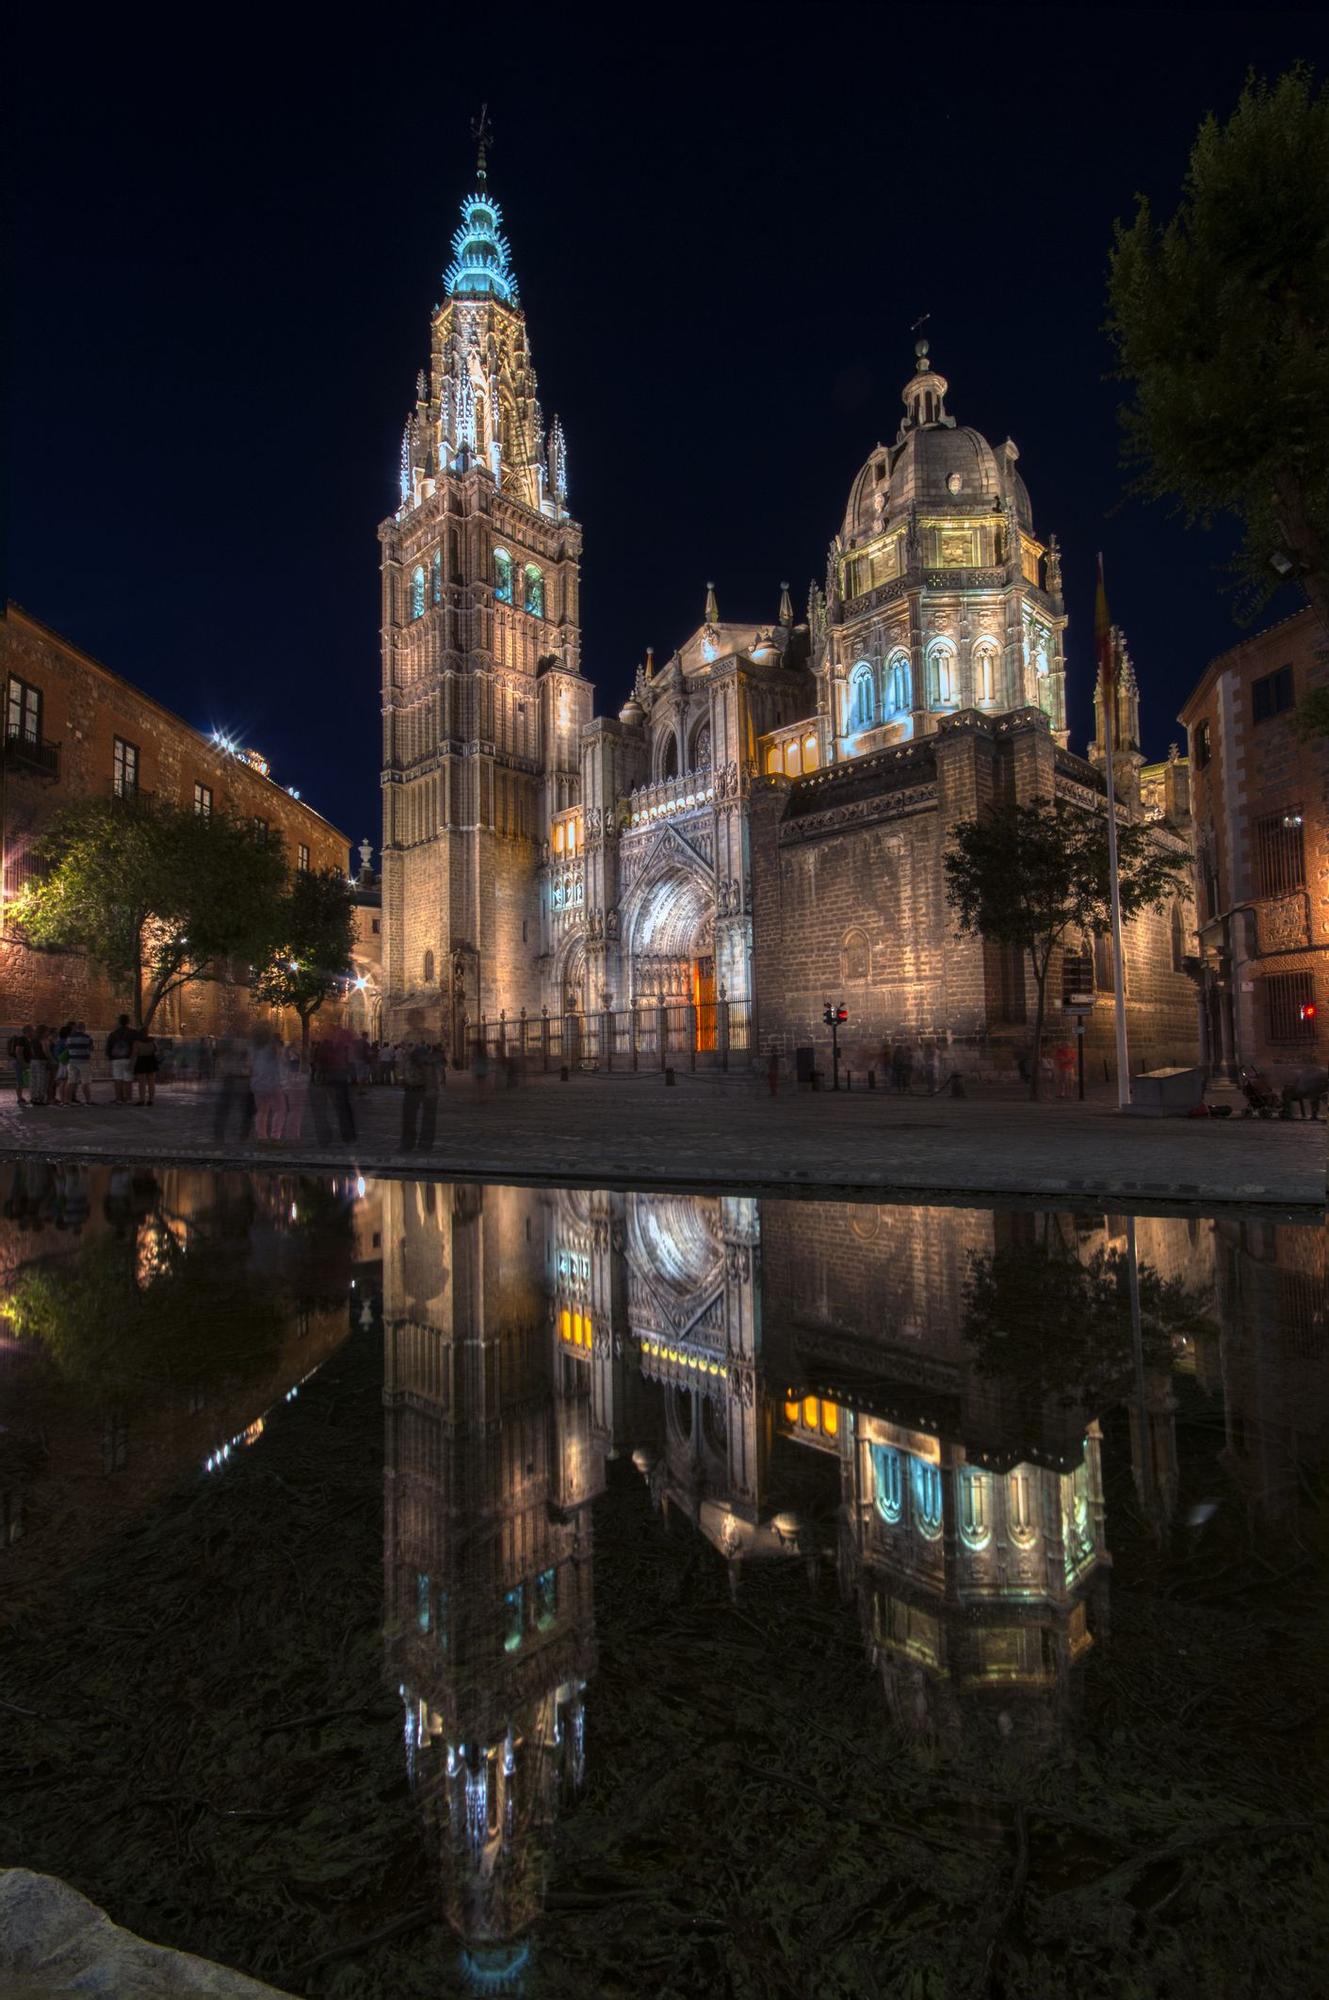 Catedral de Toledo.